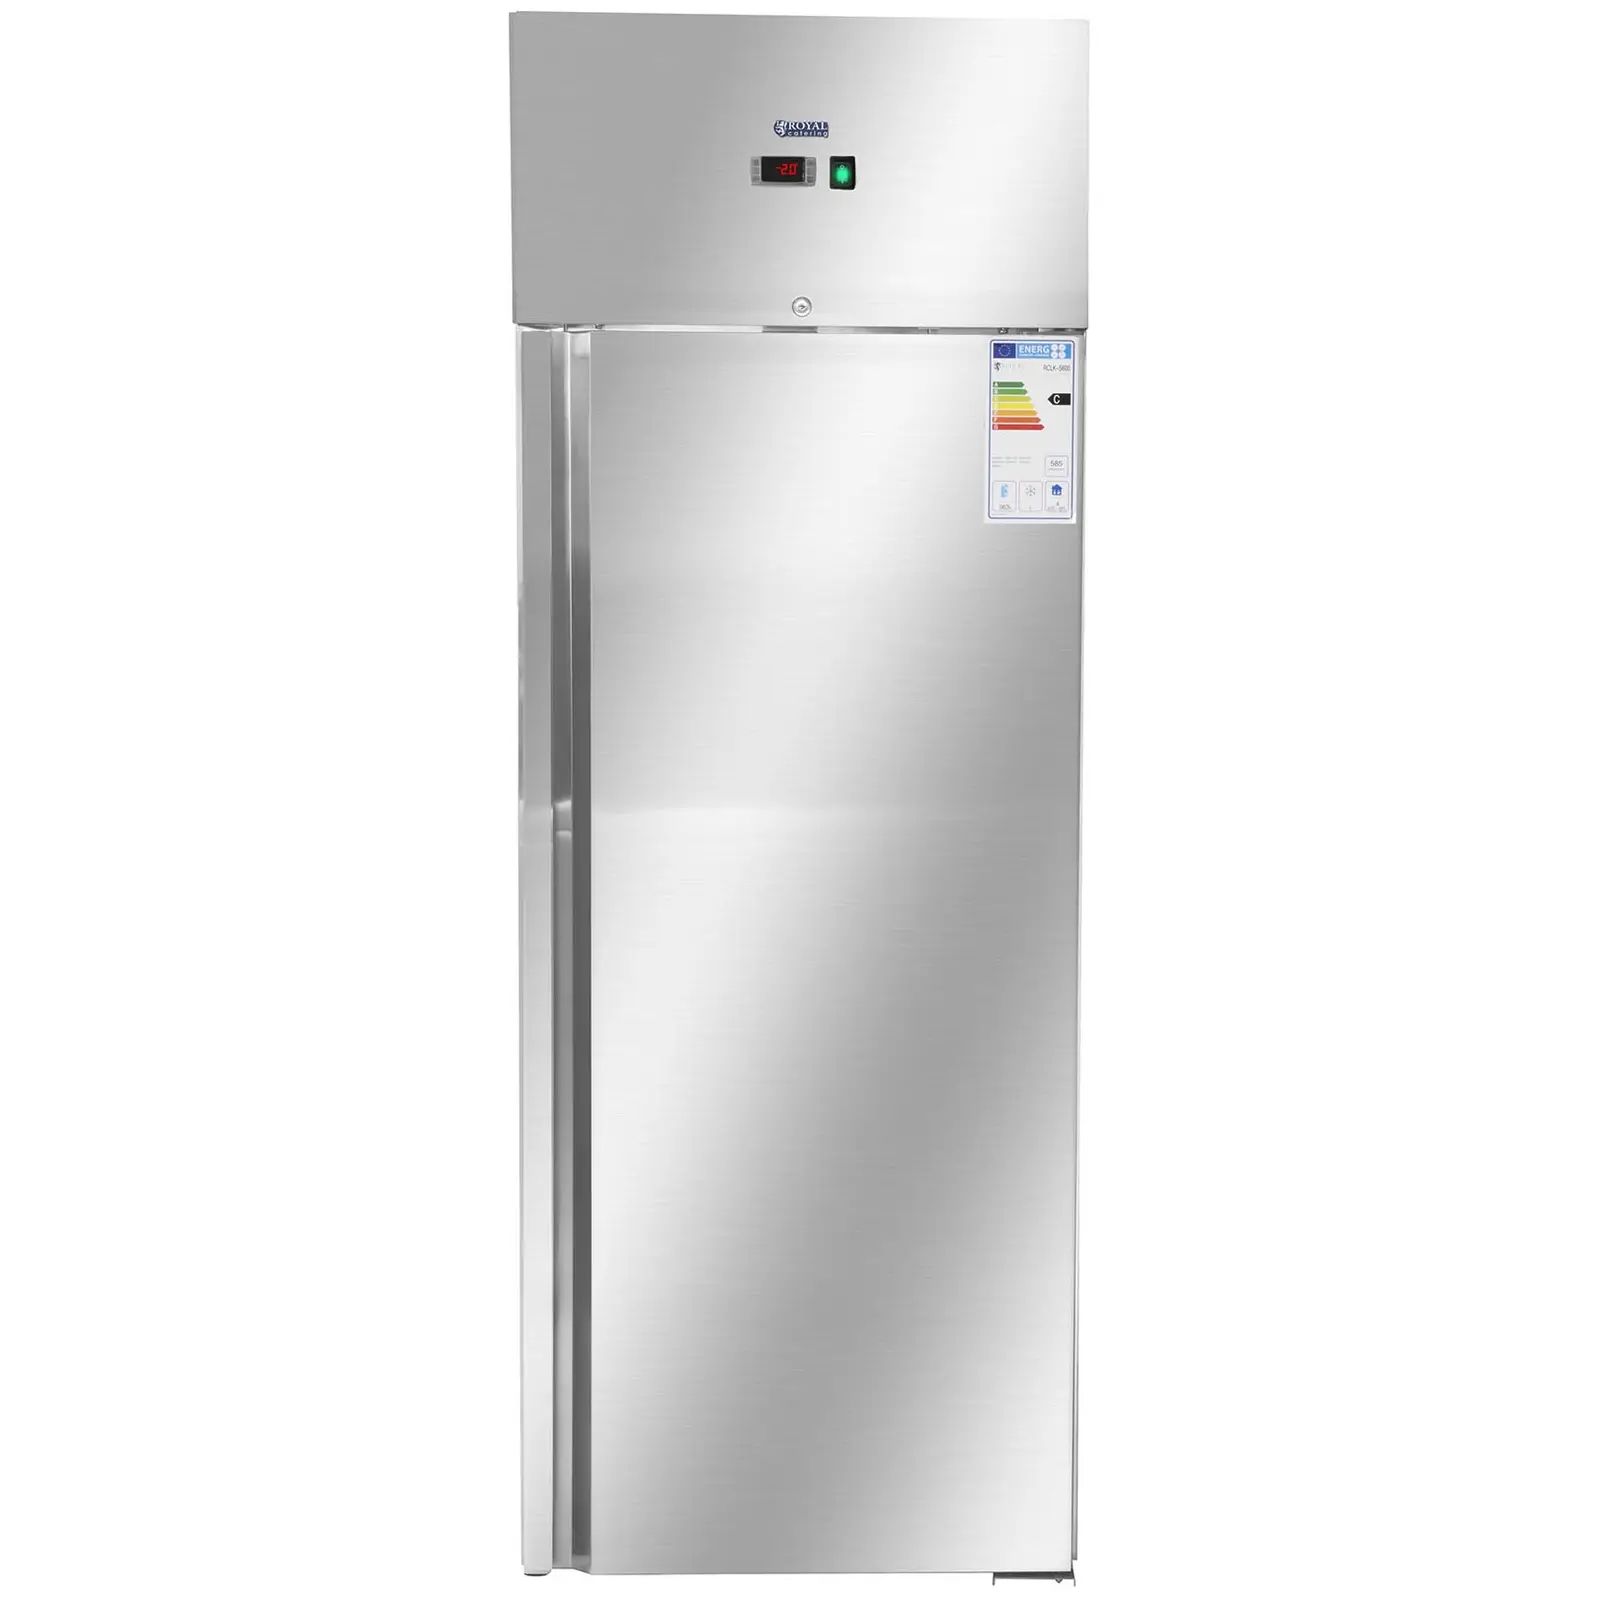 Kühlschrank Gastro - 540 L - Edelstahl